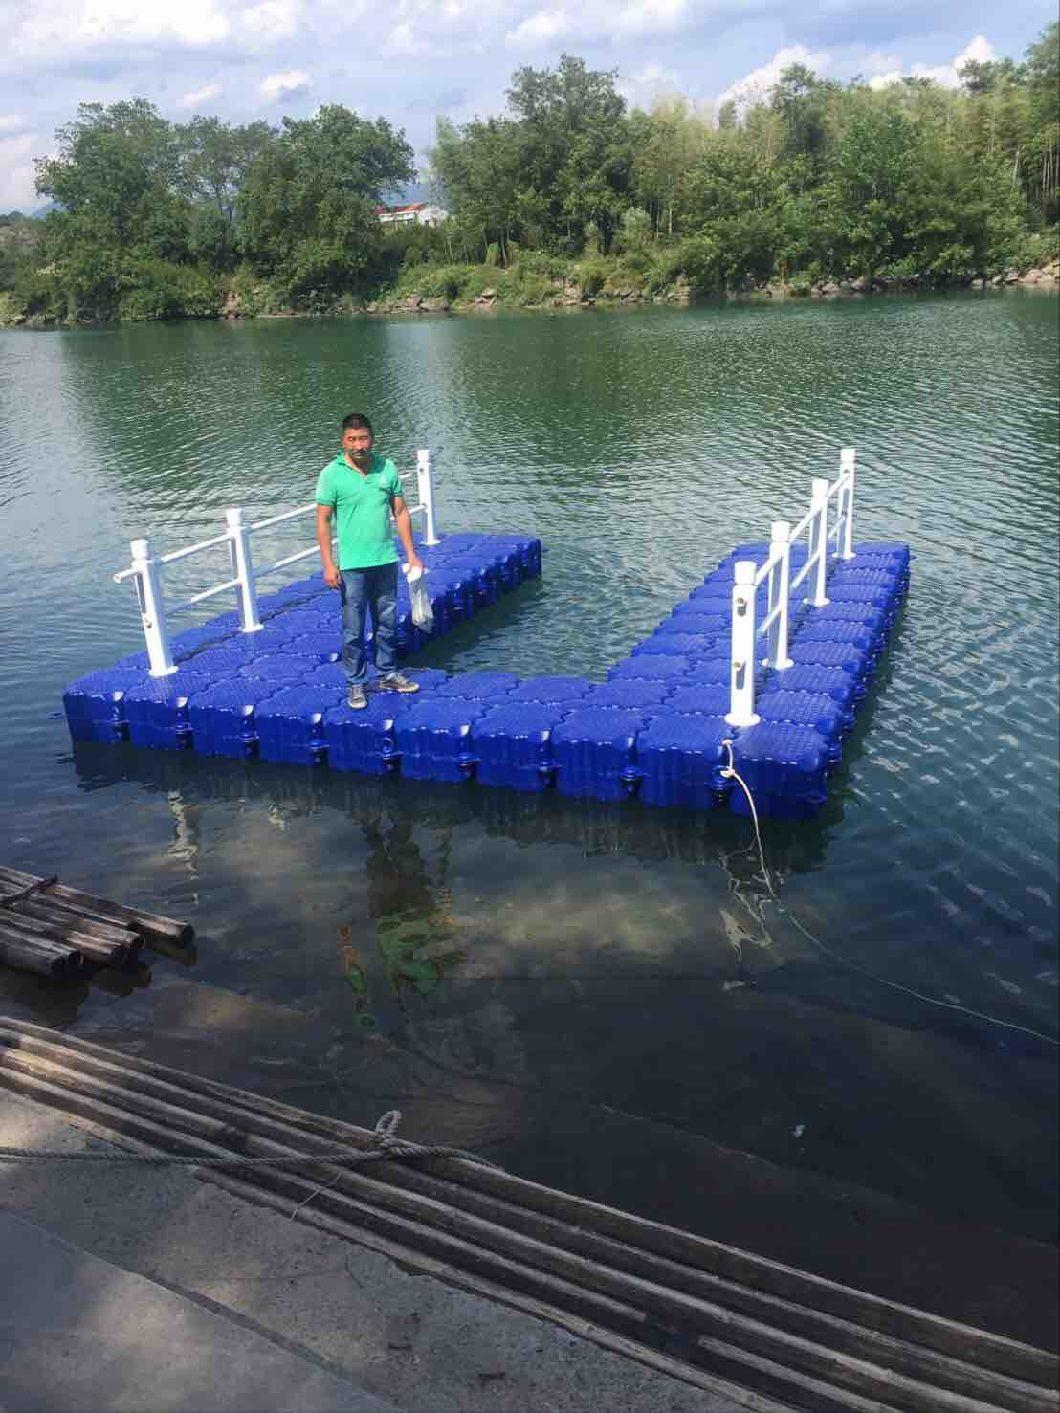 Modular Floating Pontoon Dock as Floating Bridge